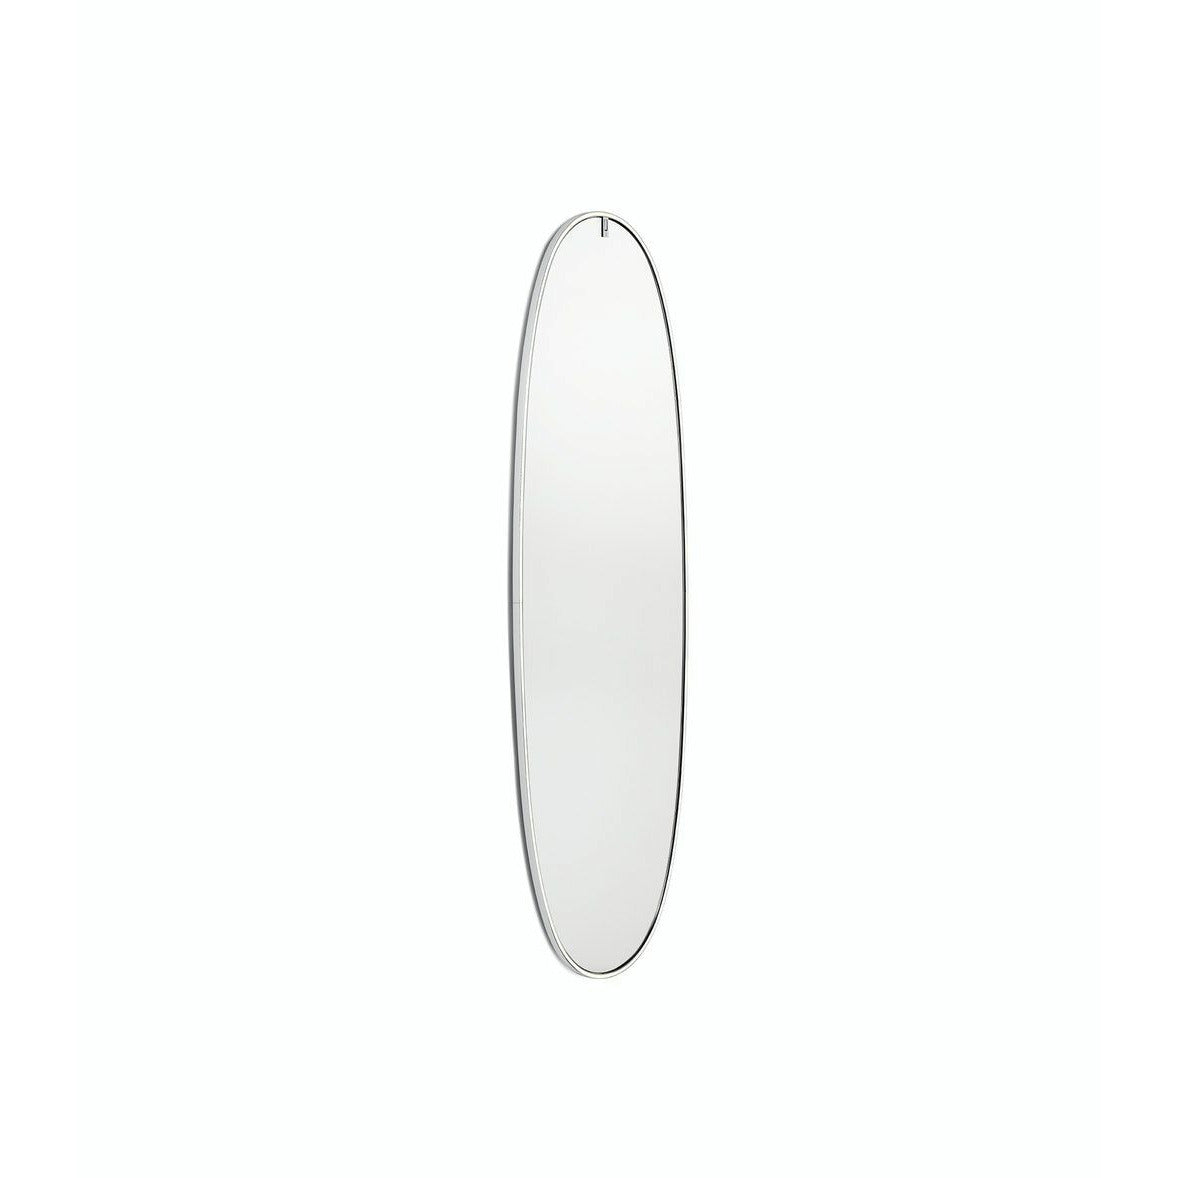 Flos la plus mirror Belle con illuminazione integrata, alluminio